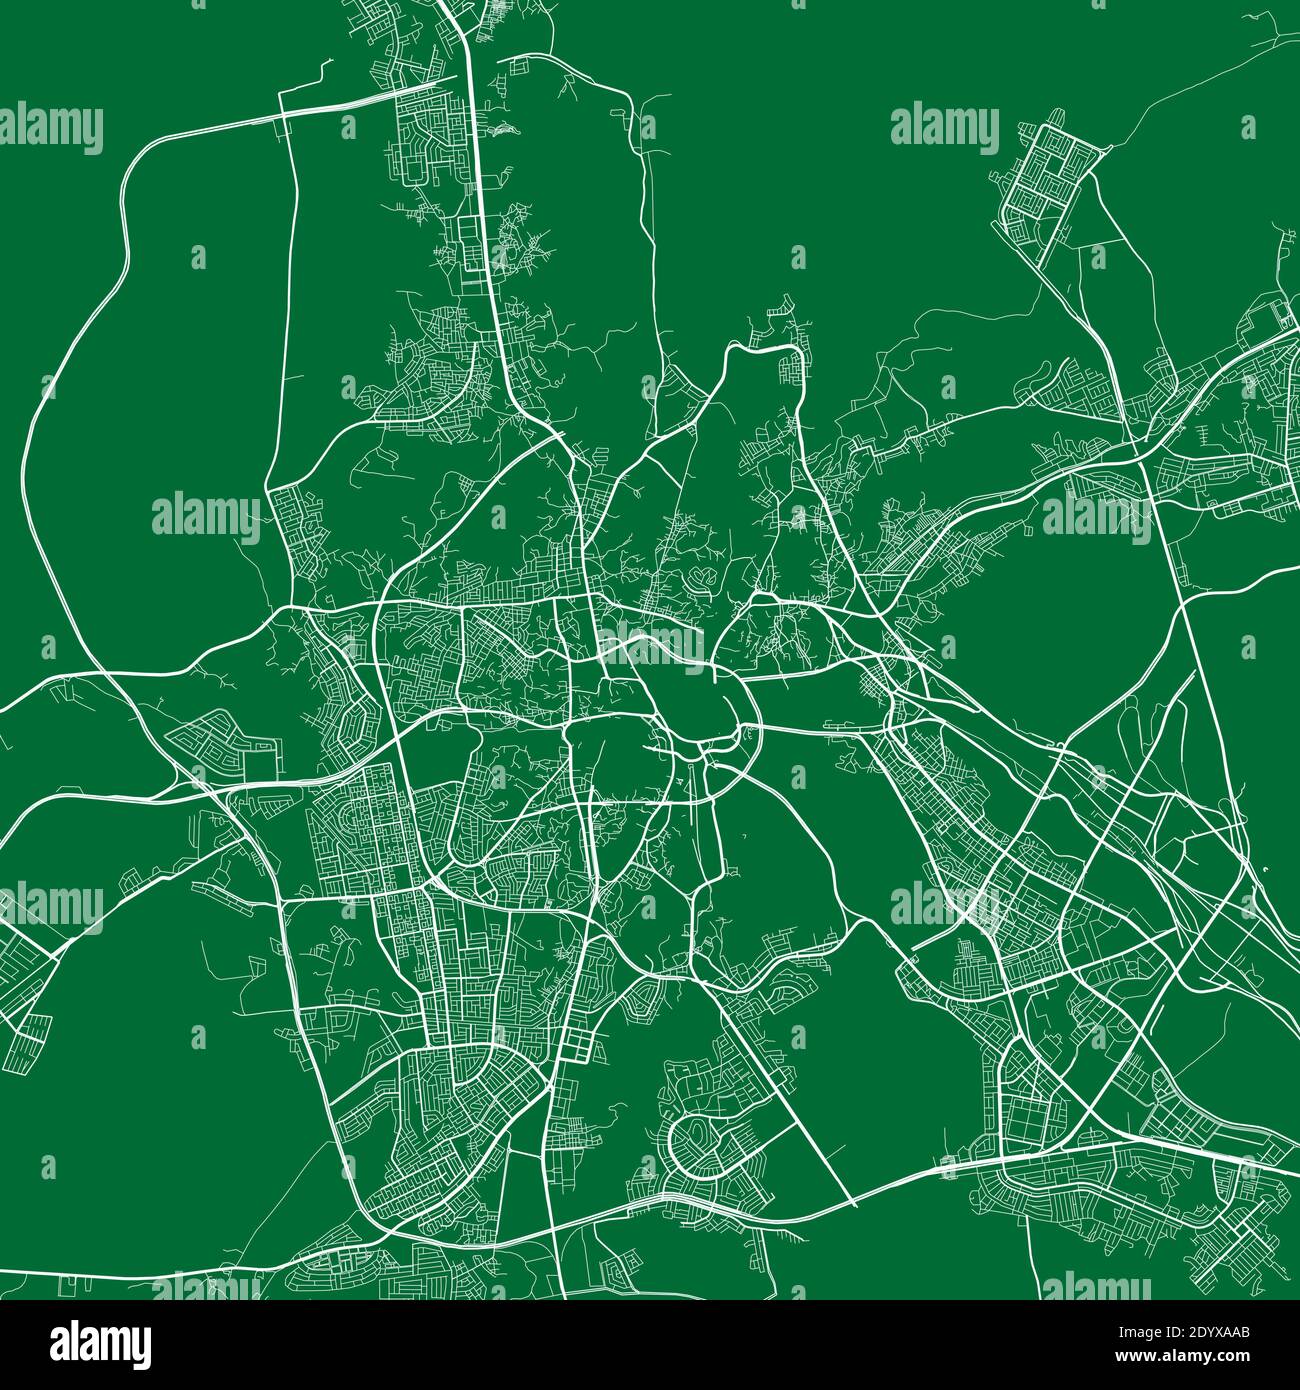 Carte détaillée du quartier administratif de la ville de la Mecque. Illustration vectorielle libre de droits. Panorama urbain. Carte touristique graphique décorative du territoire de la Mecque Illustration de Vecteur